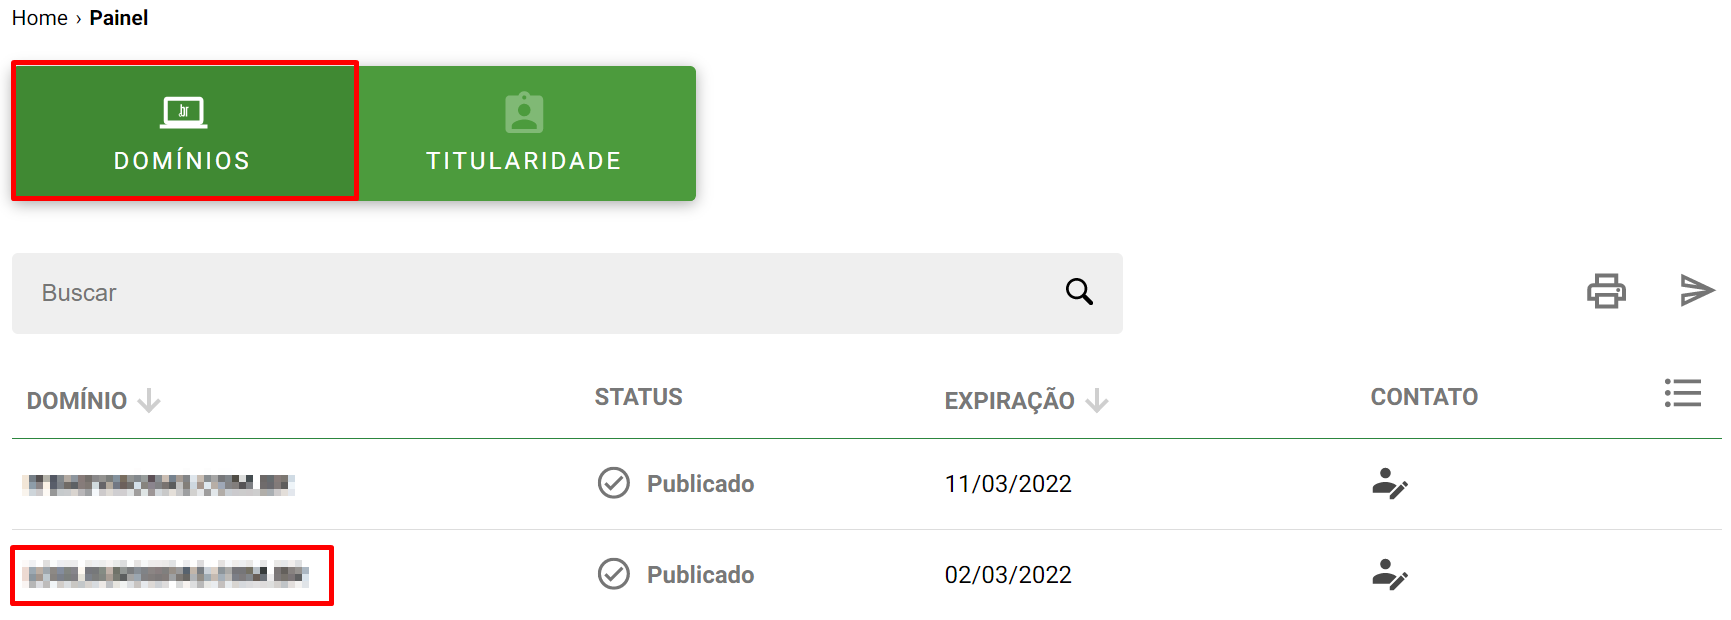 Painel com a lista dos domínios hospestados no registro.br